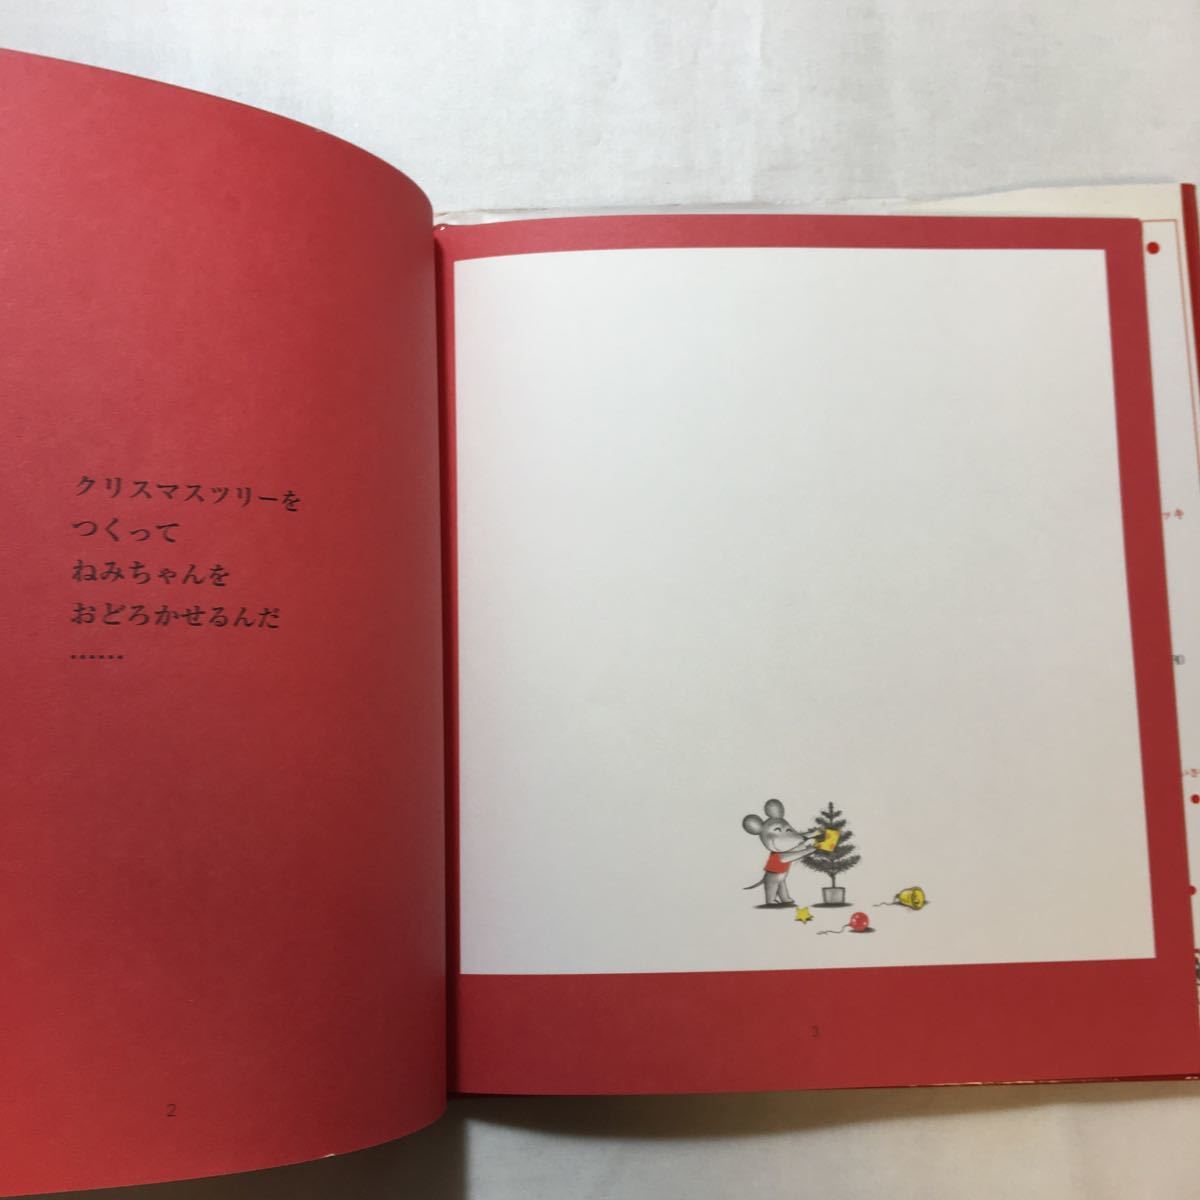 zaa-m1b♪ねずみくんのクリスマス (ねずみくんの絵本 19) 大型本 2003/10/1 なかえ よしを (著), 上野 紀子 (イラスト)